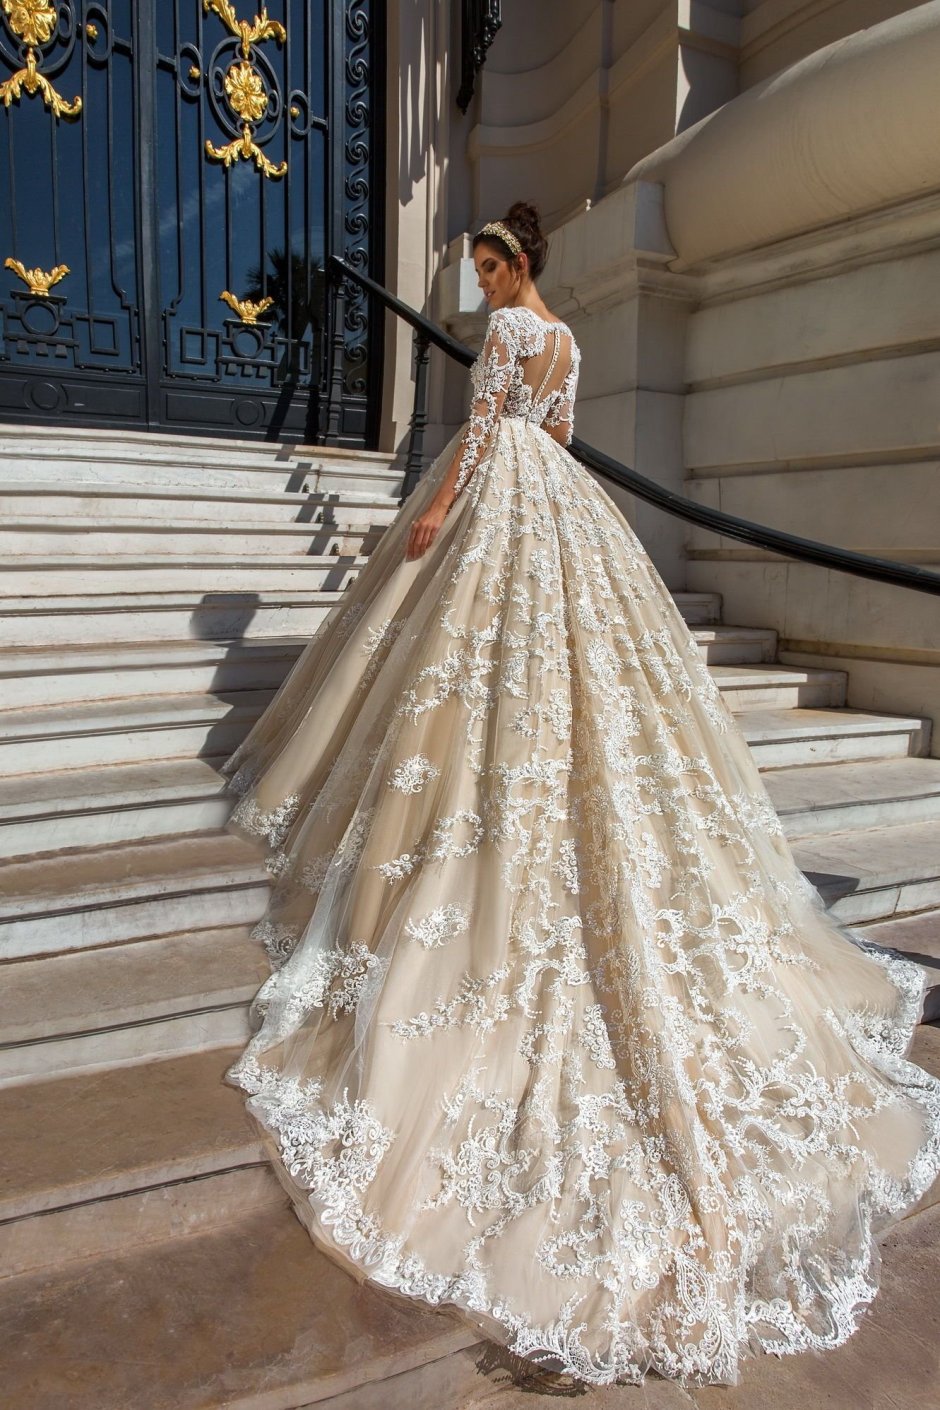 Самое дорогое свадебное платье в мире